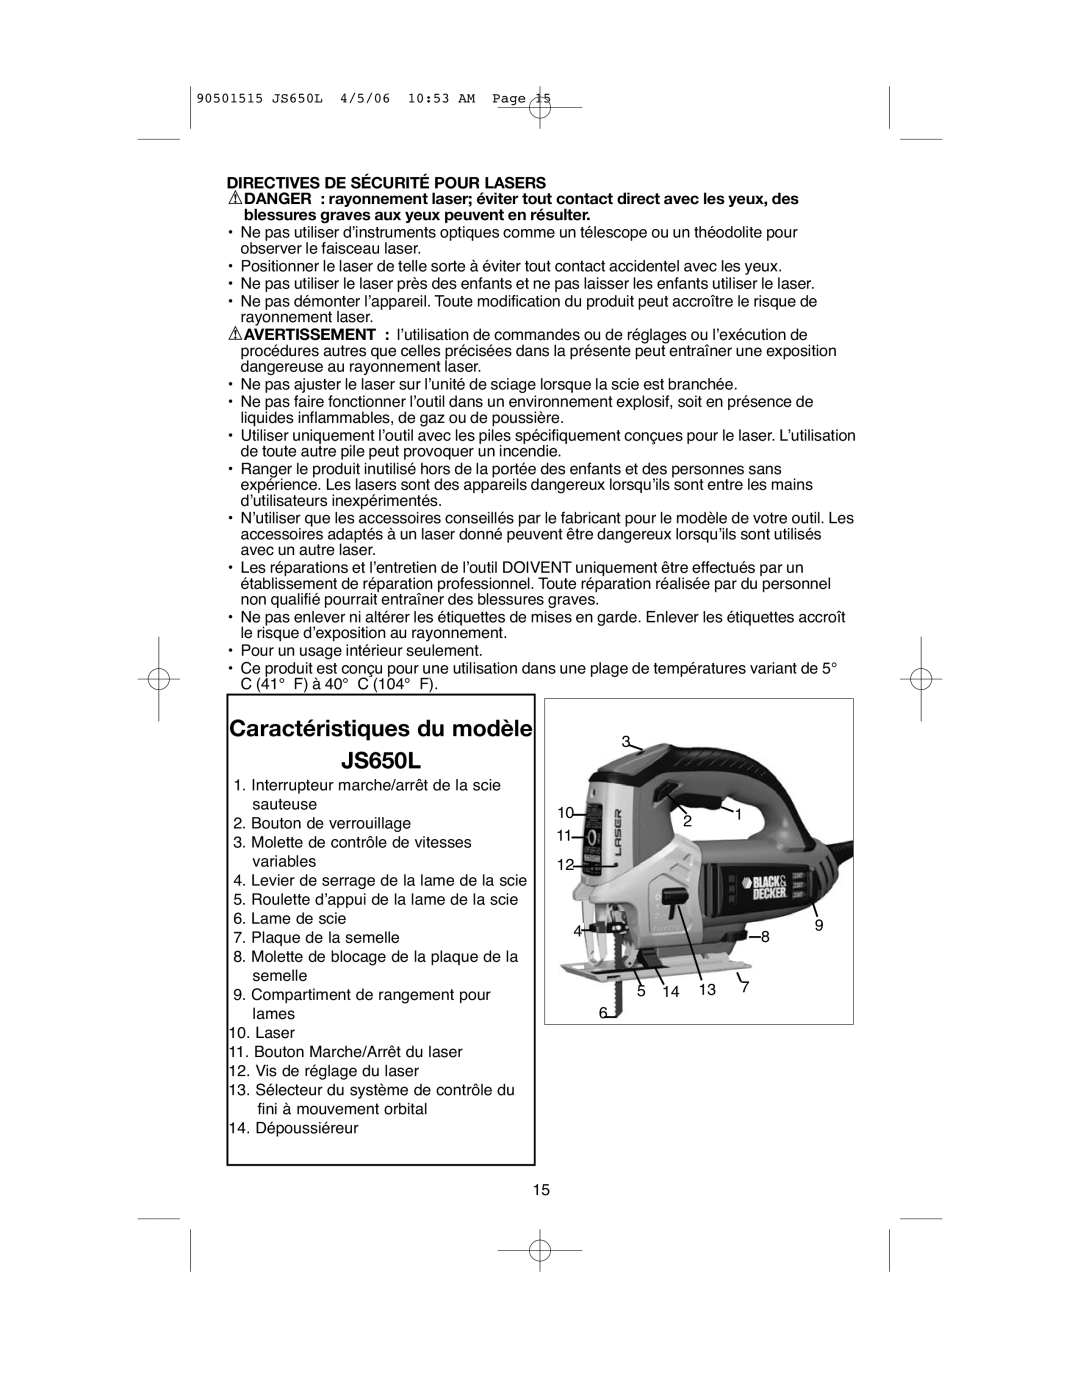 Black & Decker instruction manual Caractéristiques du modèle JS650L, Directives DE Sécurité Pour Lasers 